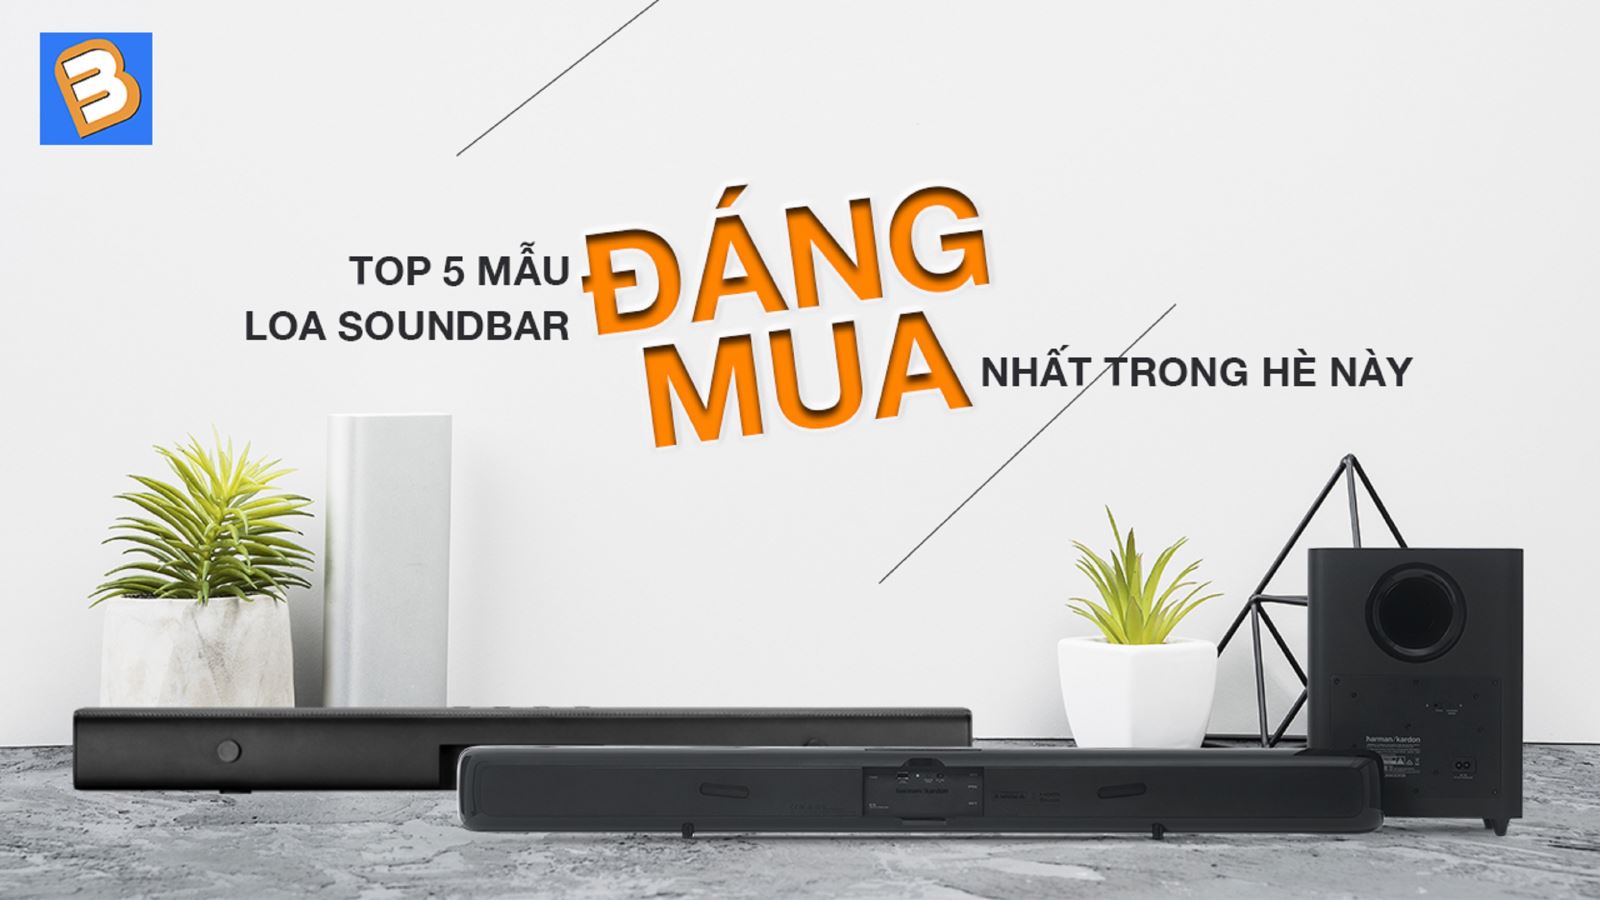 Top 5 mẫu loa soundbar đáng mua nhất trong hè này